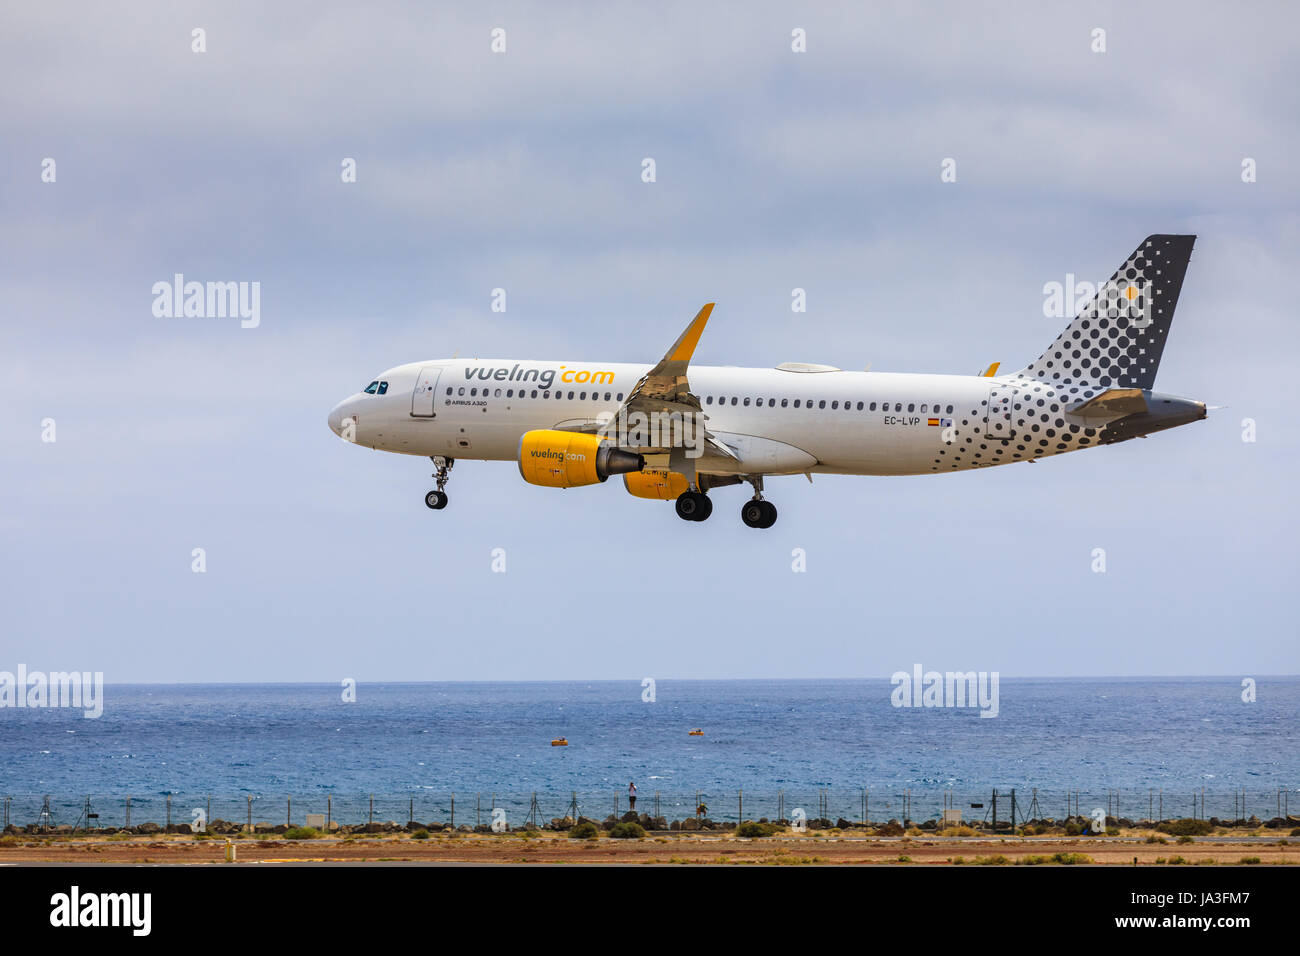 ARECIFE, Spagna - Aprile 15 2017: Airbus A320 di vueling.com con la registrazione CE-LVP in atterraggio a Lanzarote Airport Foto Stock